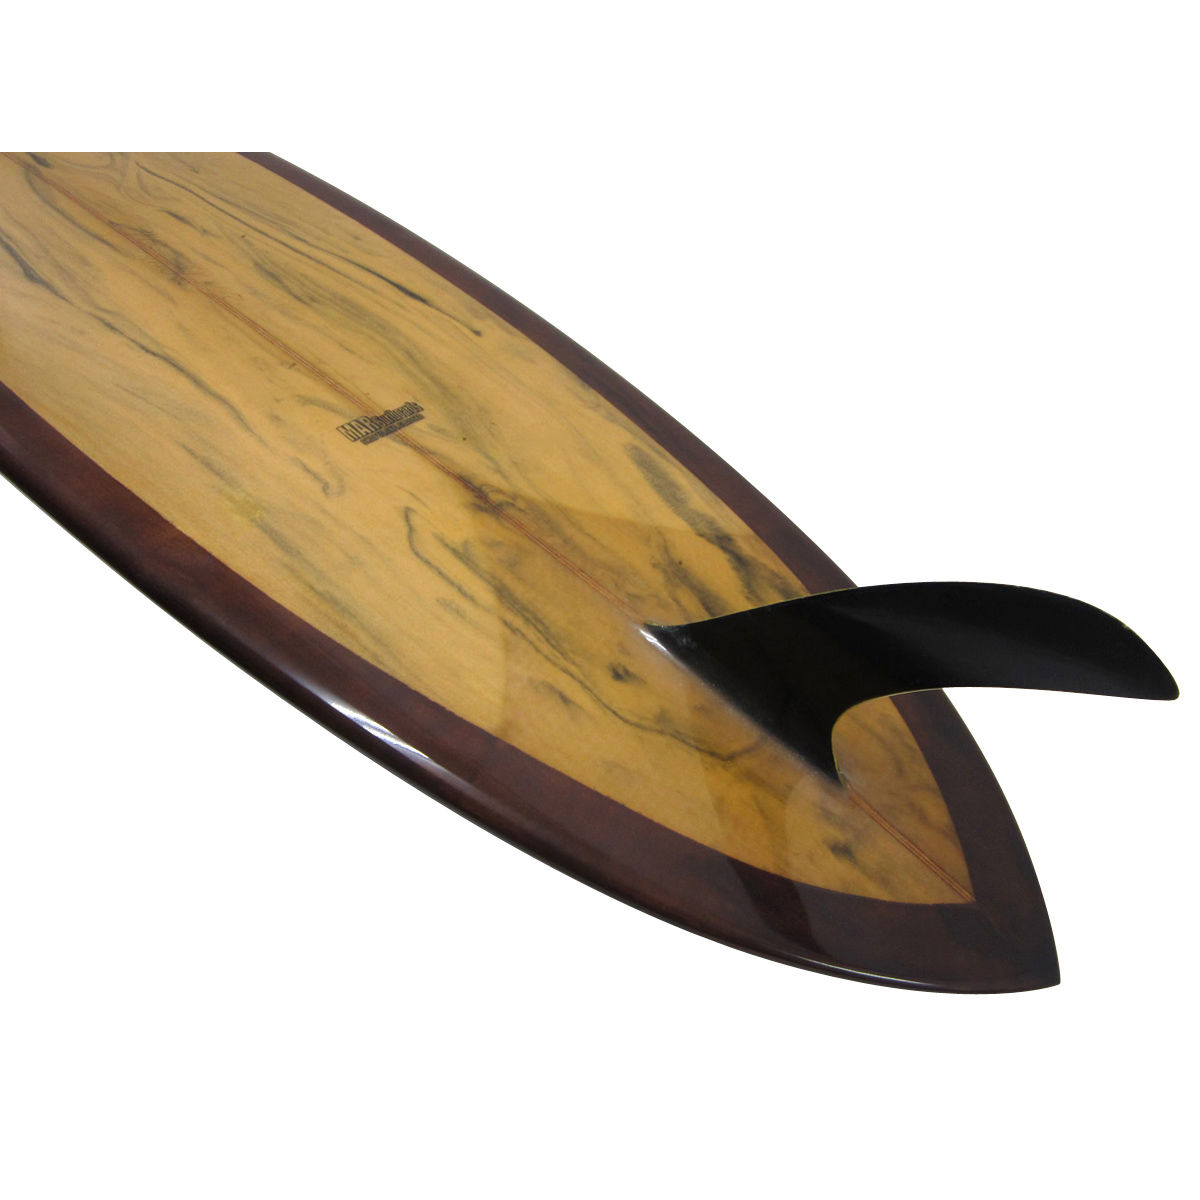 MAR SURFBOARDS / 7`0 Standard Mini Malibu